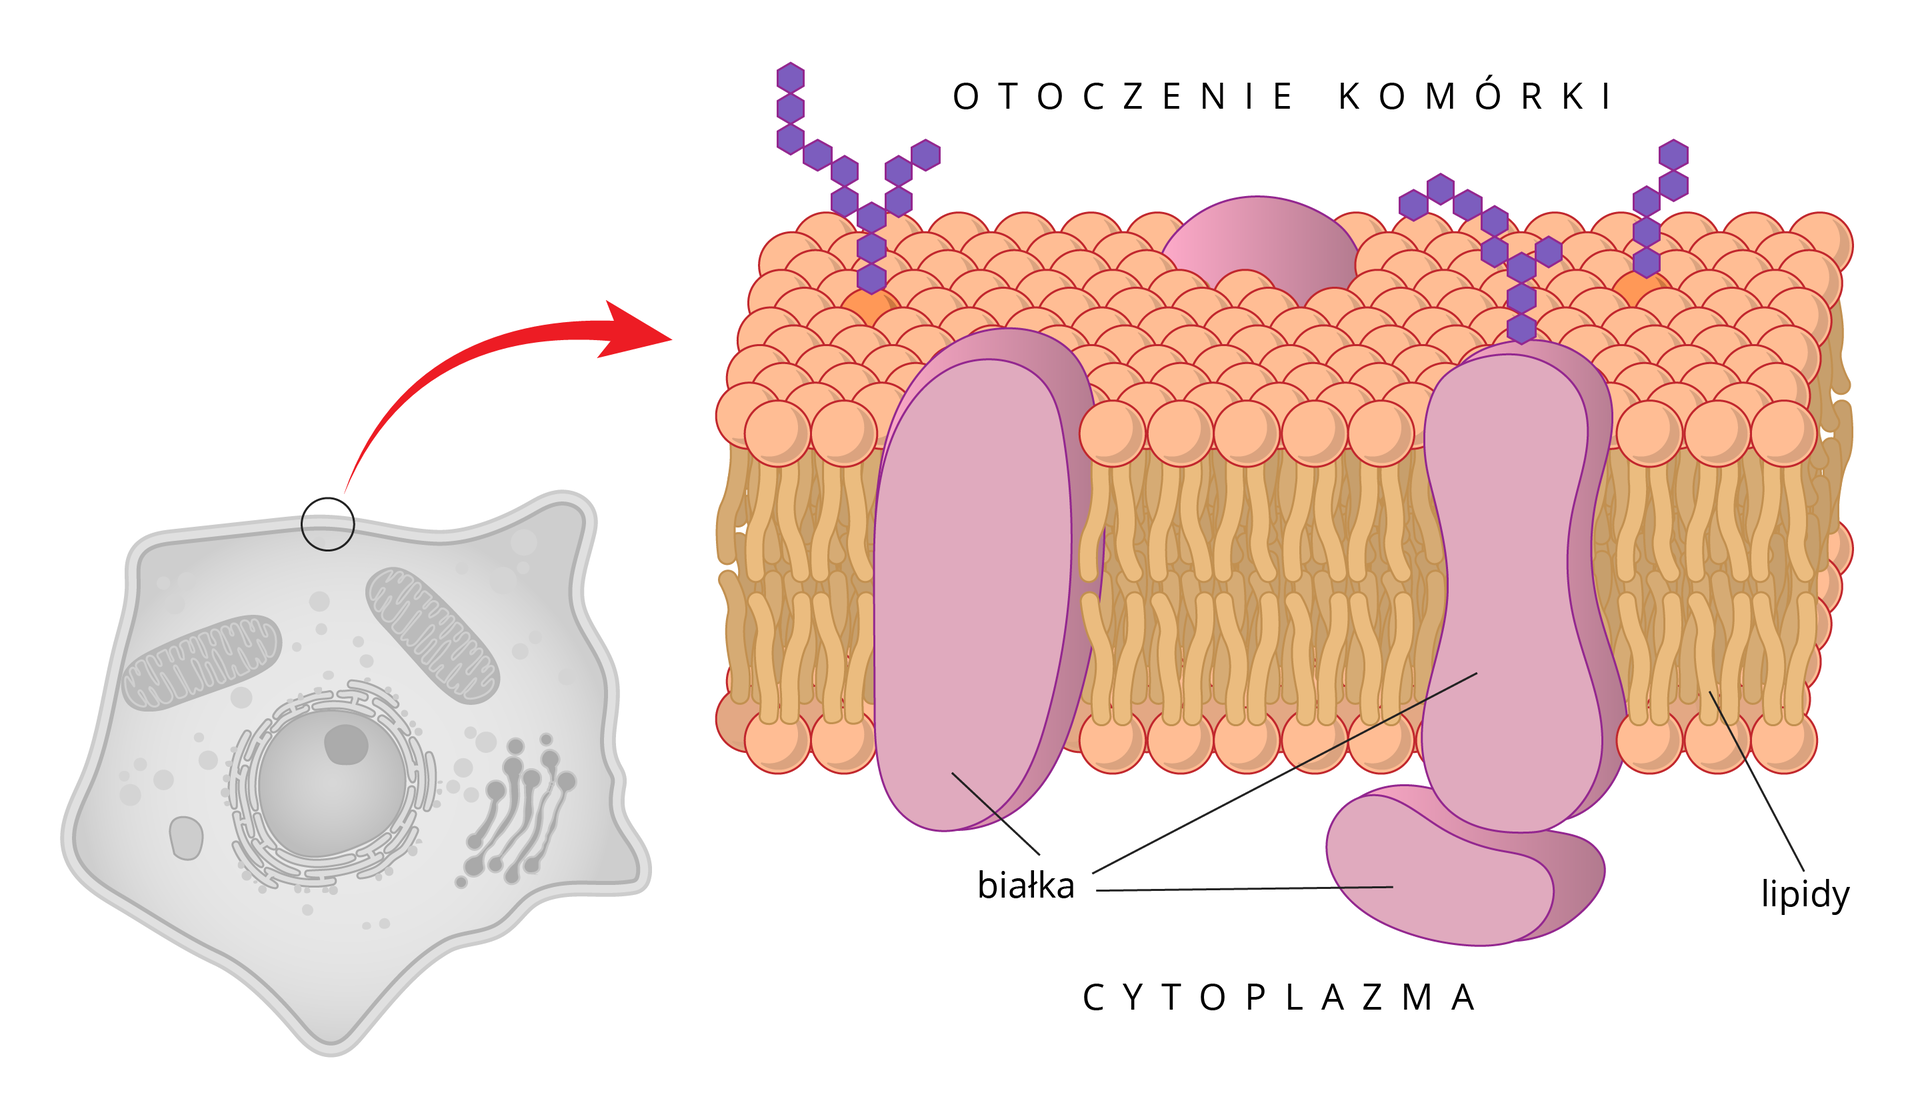 Ilustracja przedstawia budowę błony komórkowej. Błona składa sie z 2 warstw cząsteczek lipidów , których kuliste części zwrócone są na zewnątrz, a ogonki do środka. pomiędzy nimi są duże cząsteczki białek, wystające z obu stron z błony.